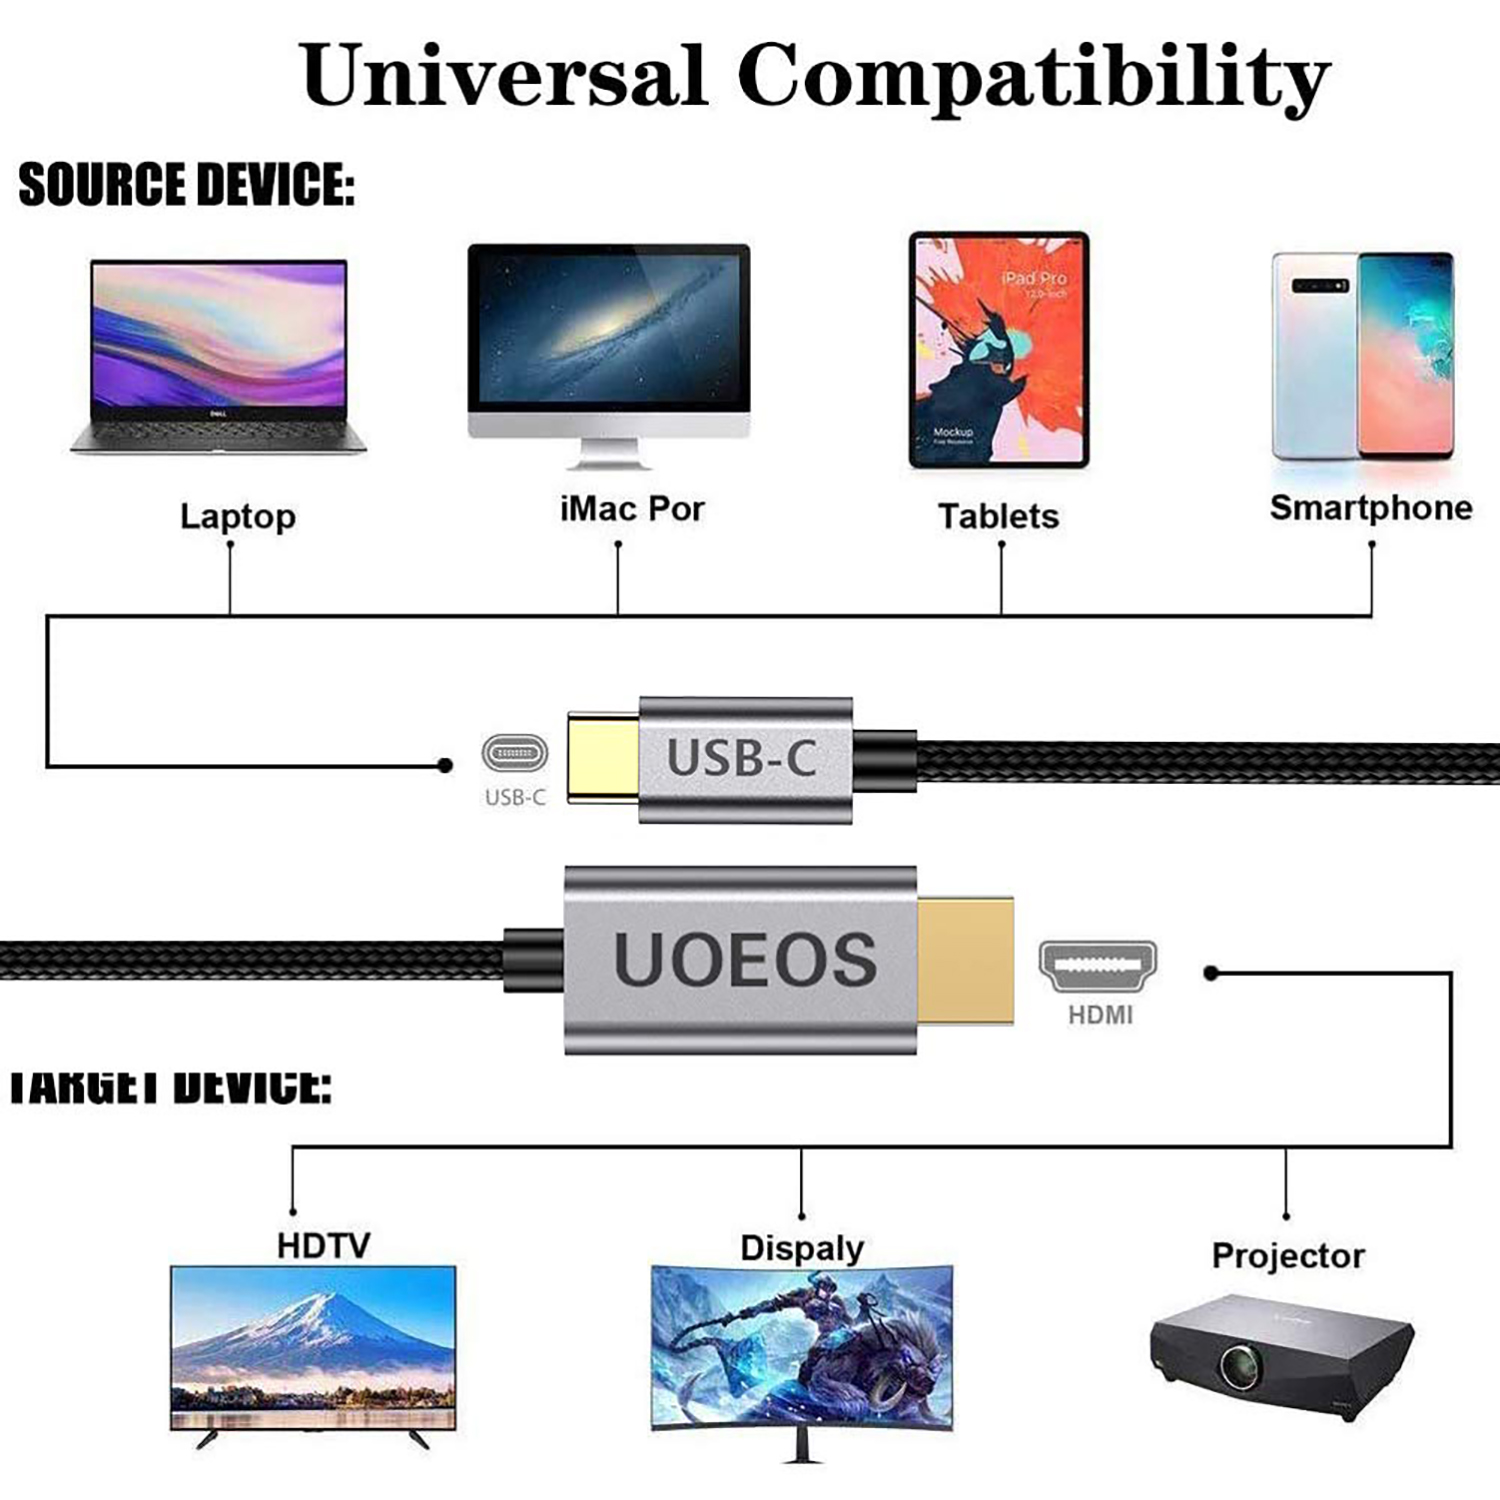 Kompatibel 3 Kabel, C Kabel Thunderbolt USB Schwarz 4K auf HDMI DESIGN KÖNIG